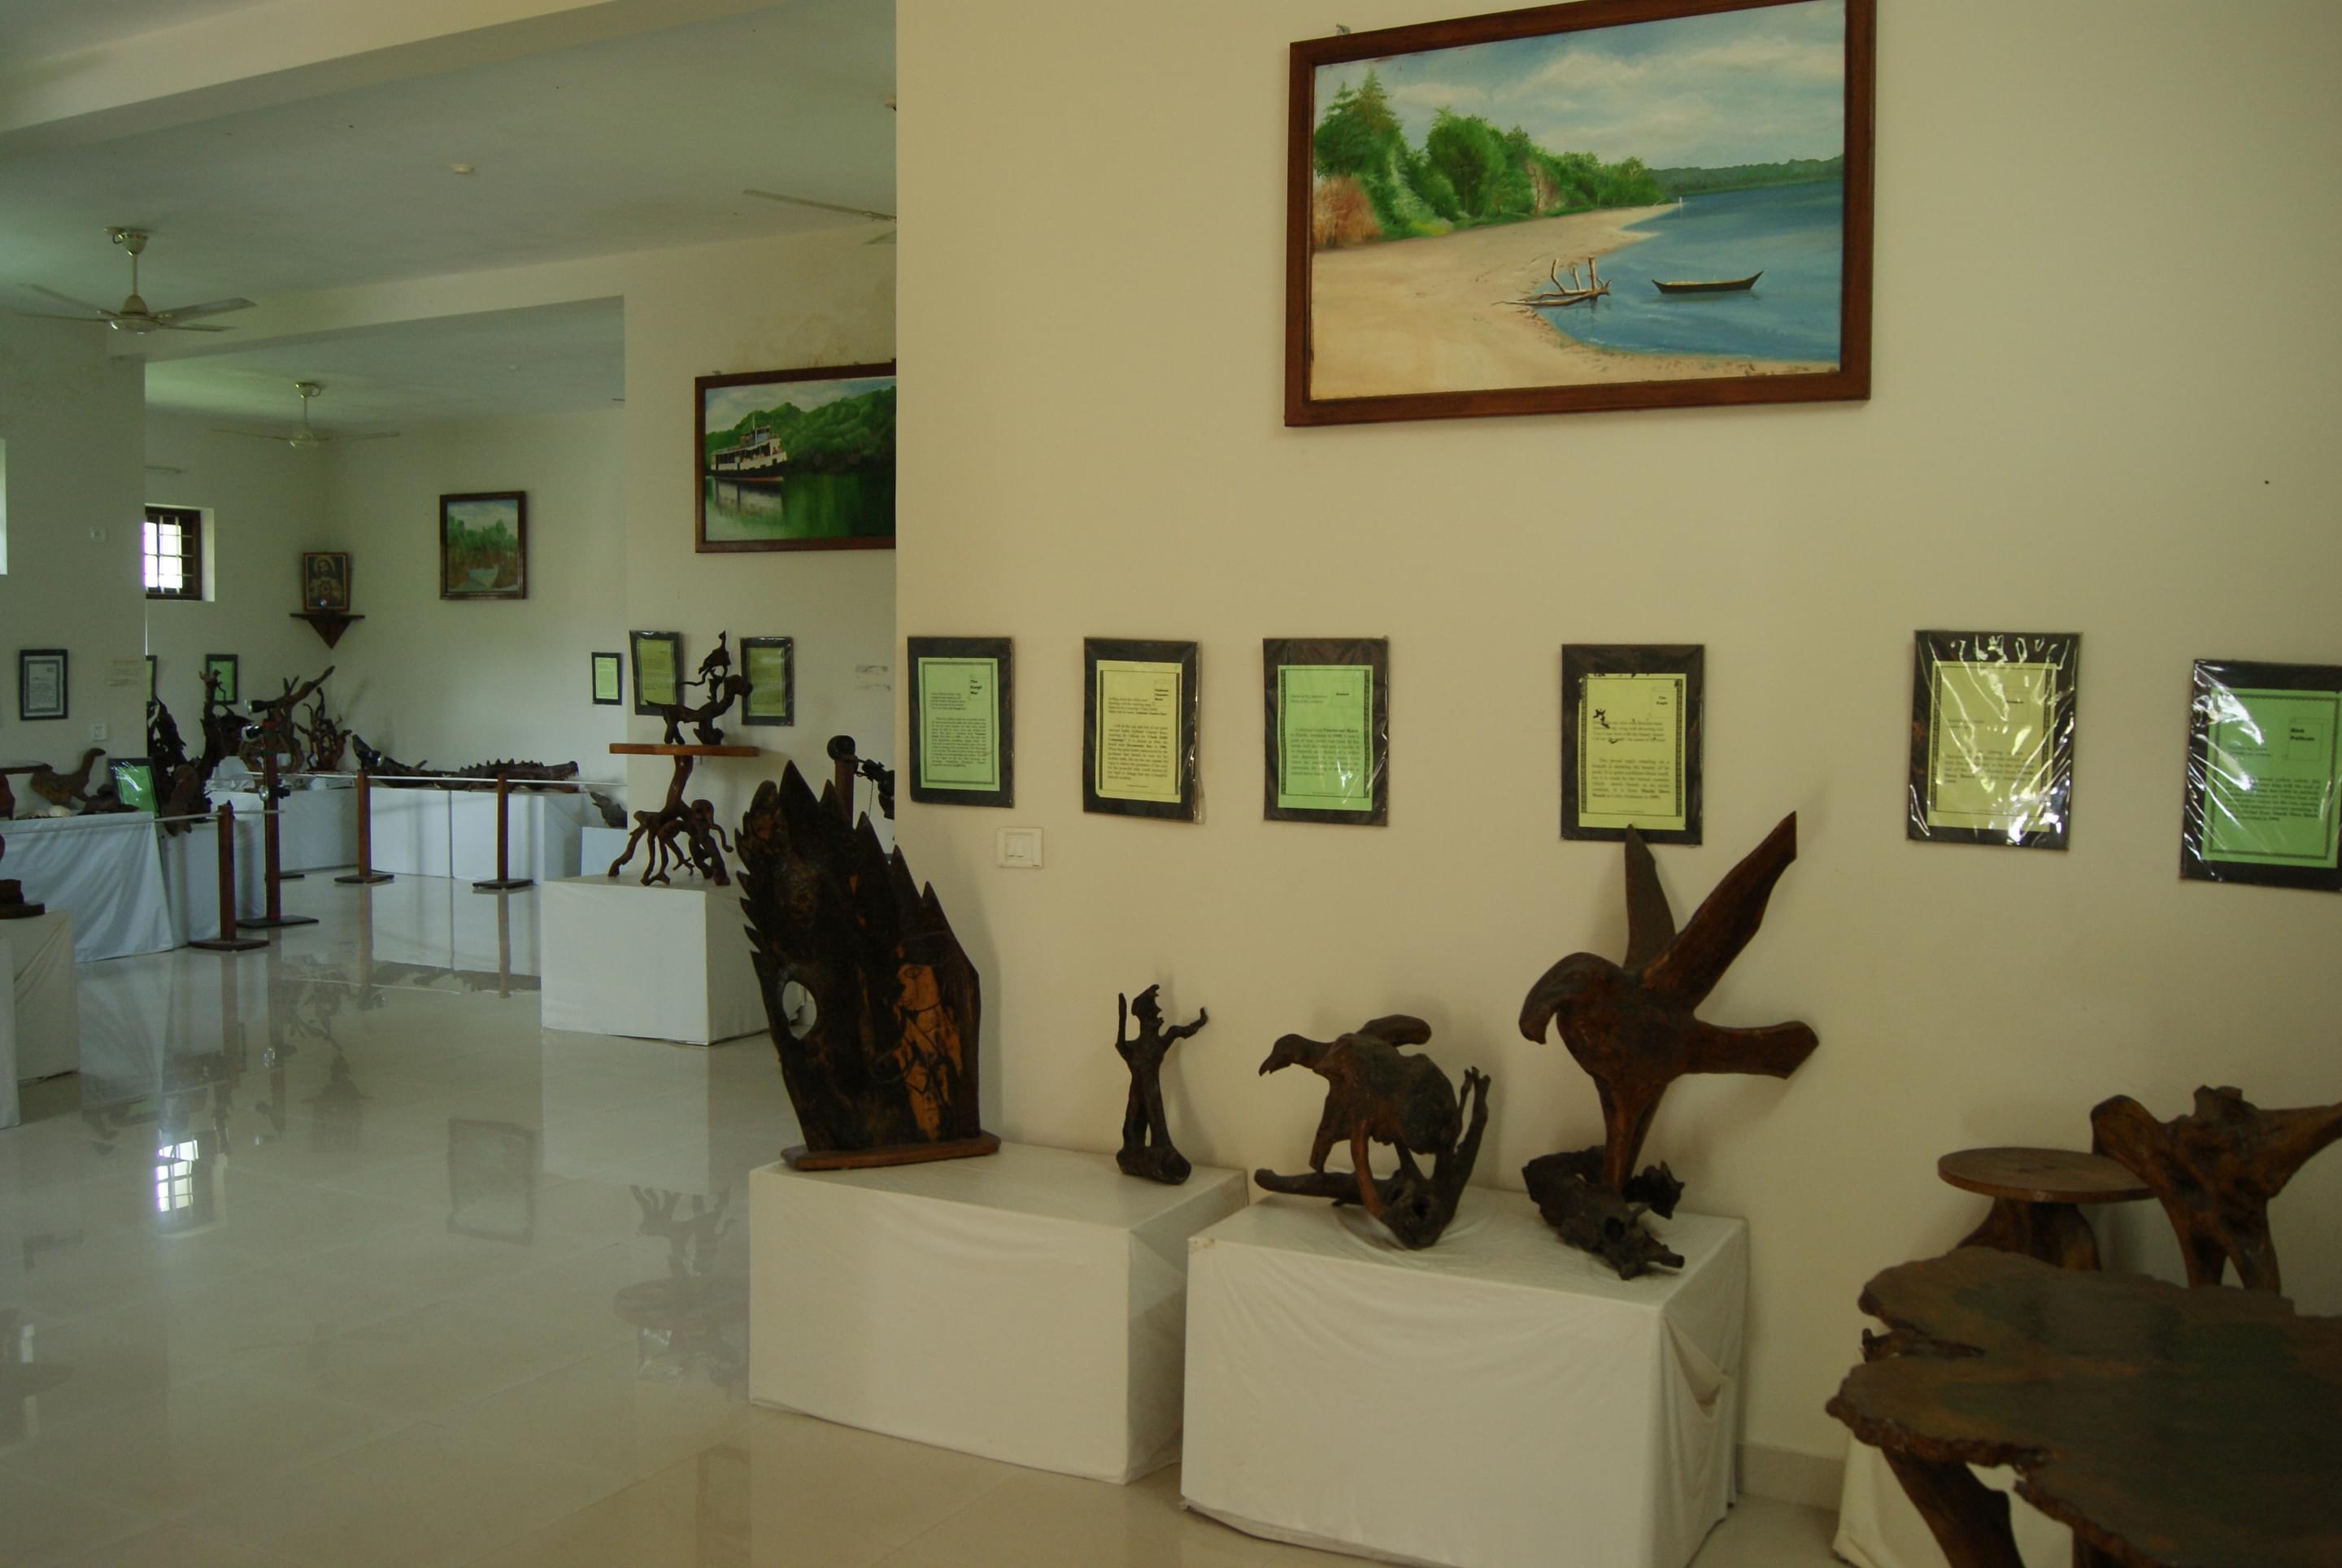 Bay Island Drift Museum Overview